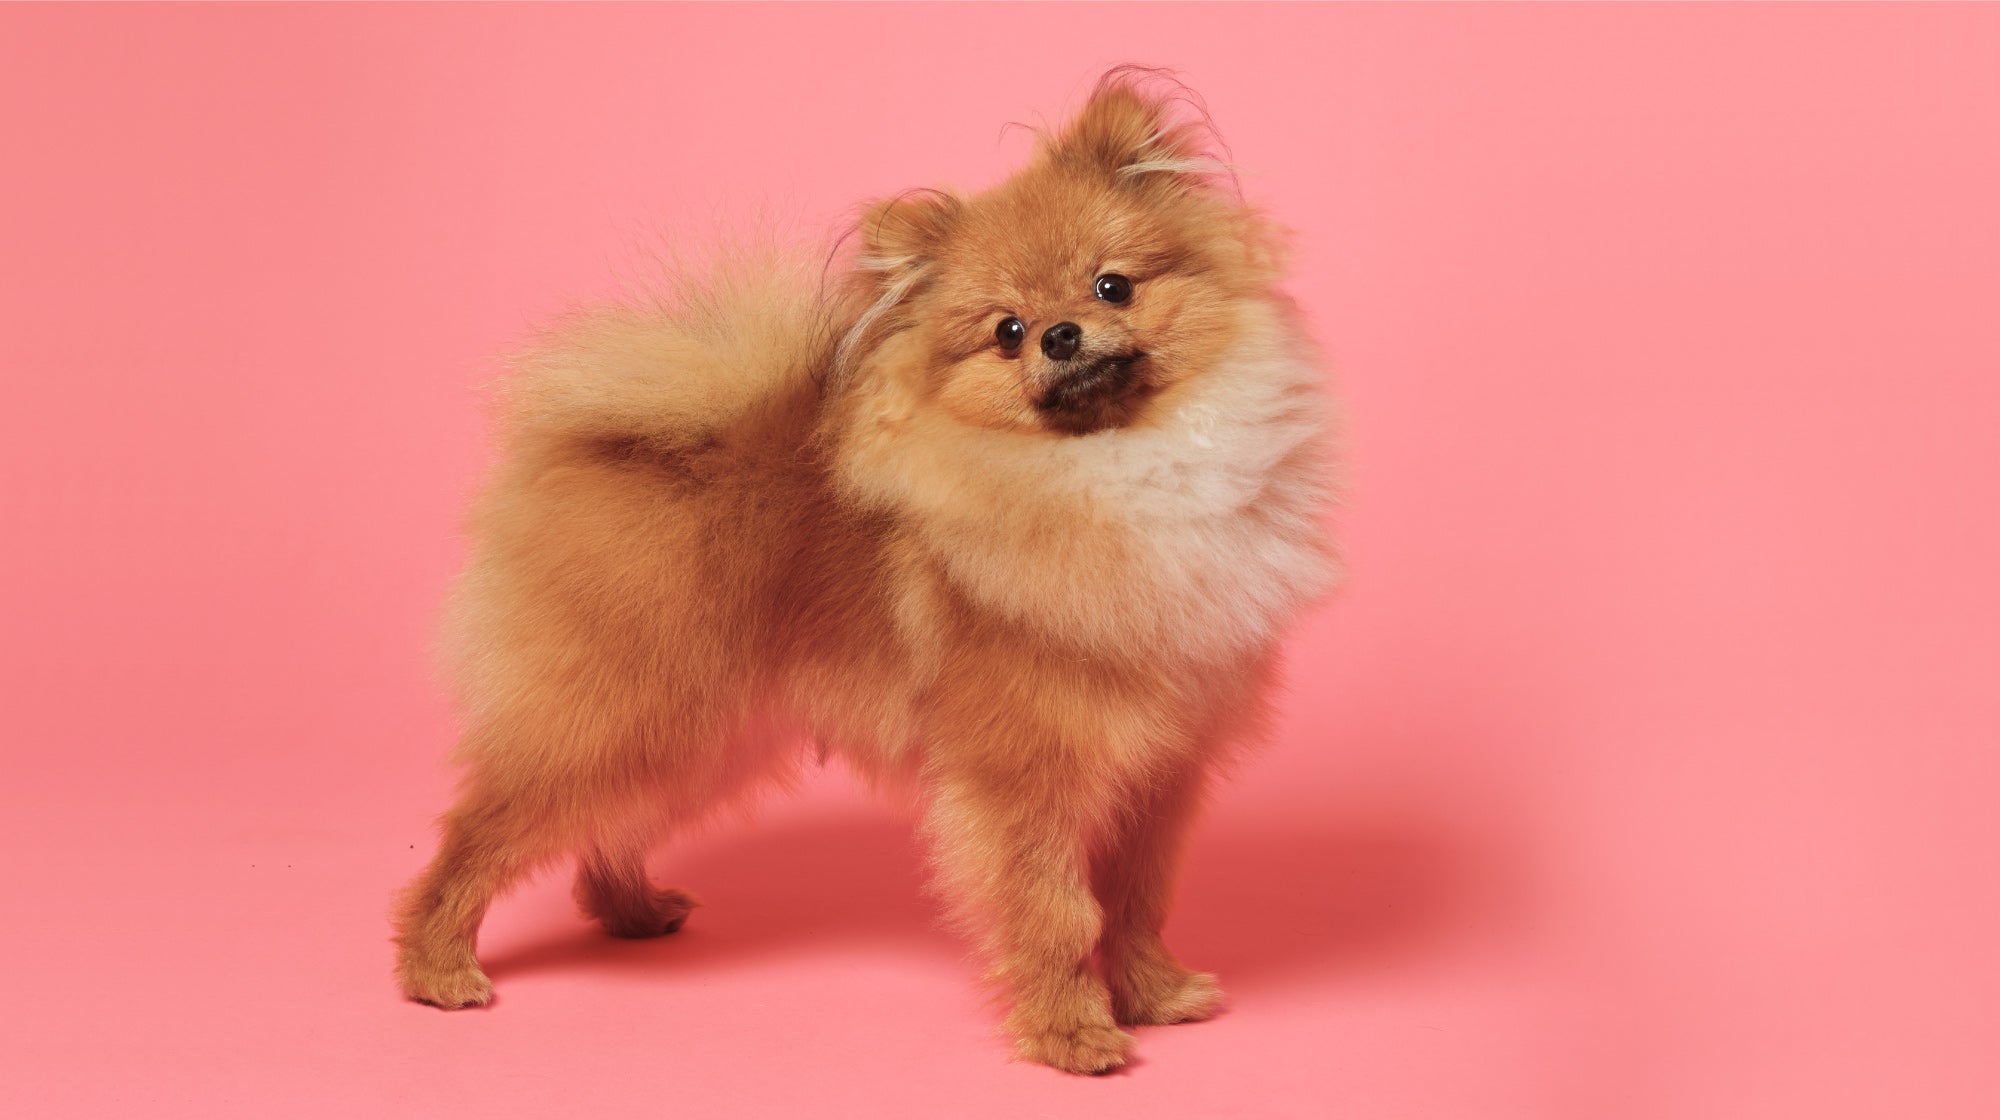 Pomeranian dog on a pink background